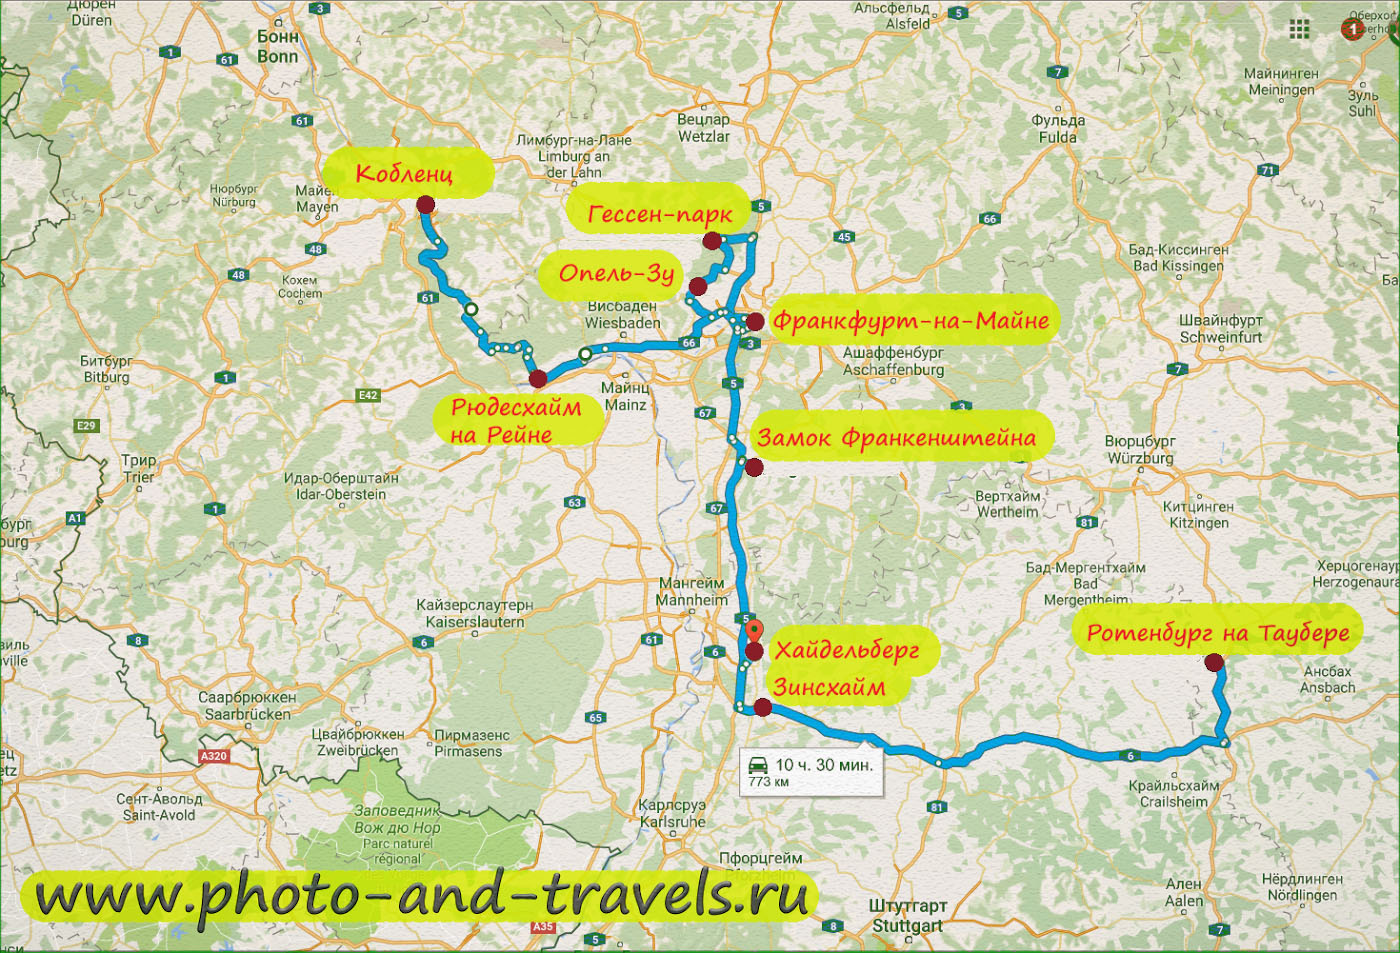 Карта со схемой достопримечательностей в окрестностях Франкфурта, куда можно съездить самостоятельно.